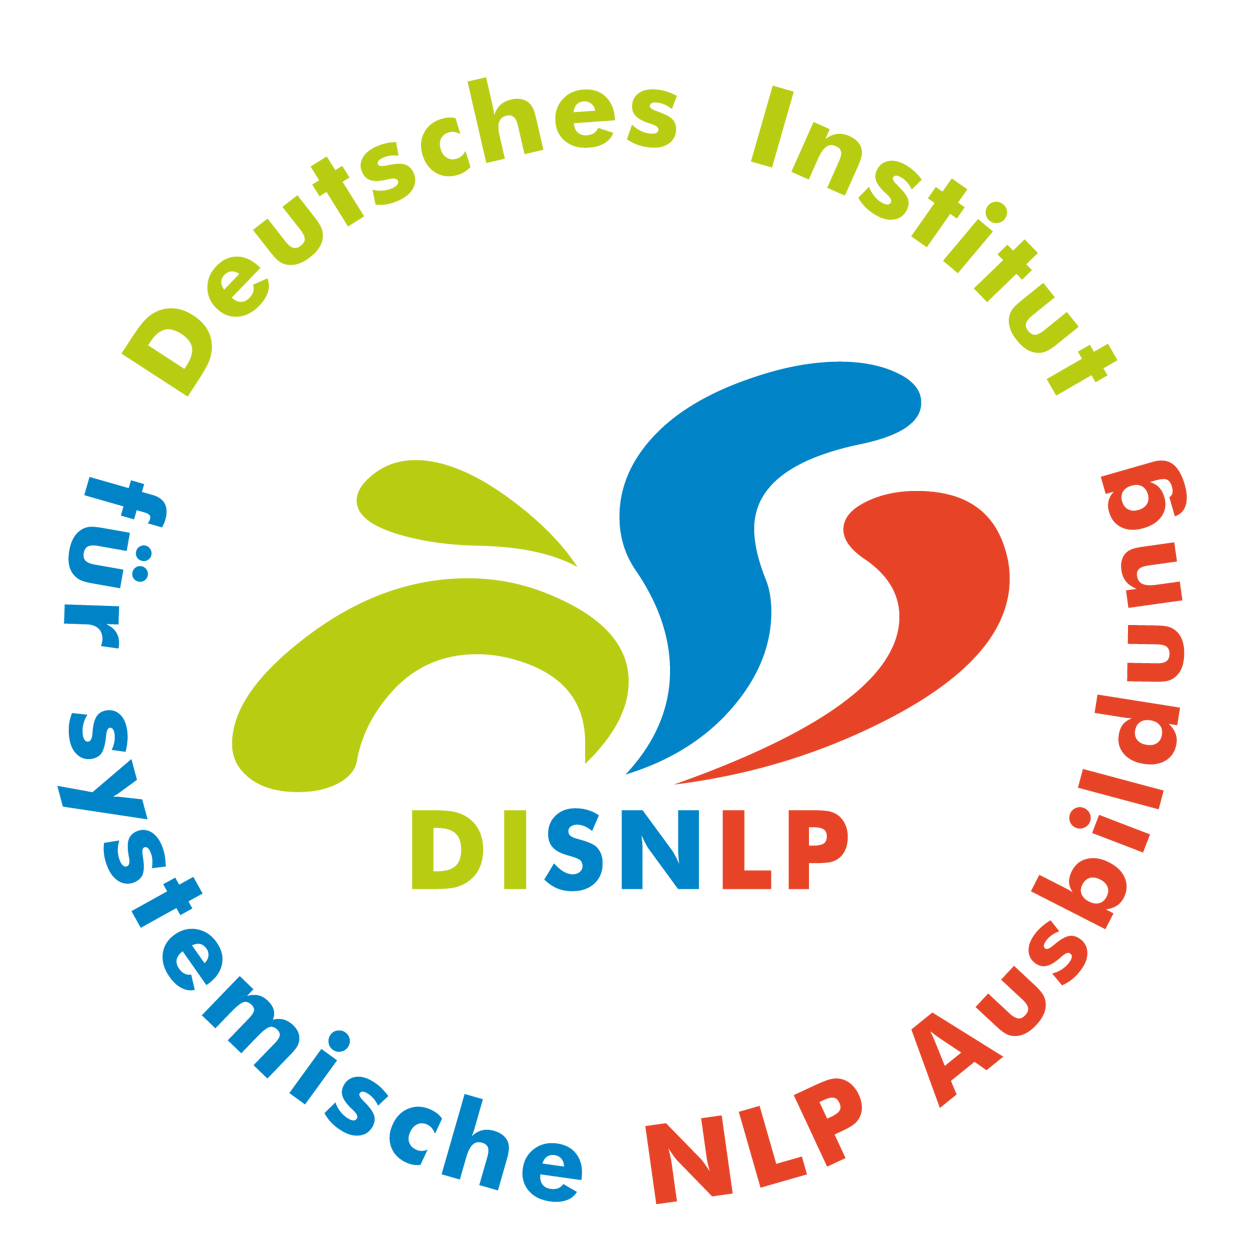 Seminar Selbstbewusstsein, Selbstvertrauen, Selbstwert, Selbstsicherheit stärken Weiden In Der Oberpfalz mit NLP Coaching Kurs für mehr Selbstbewusstsein